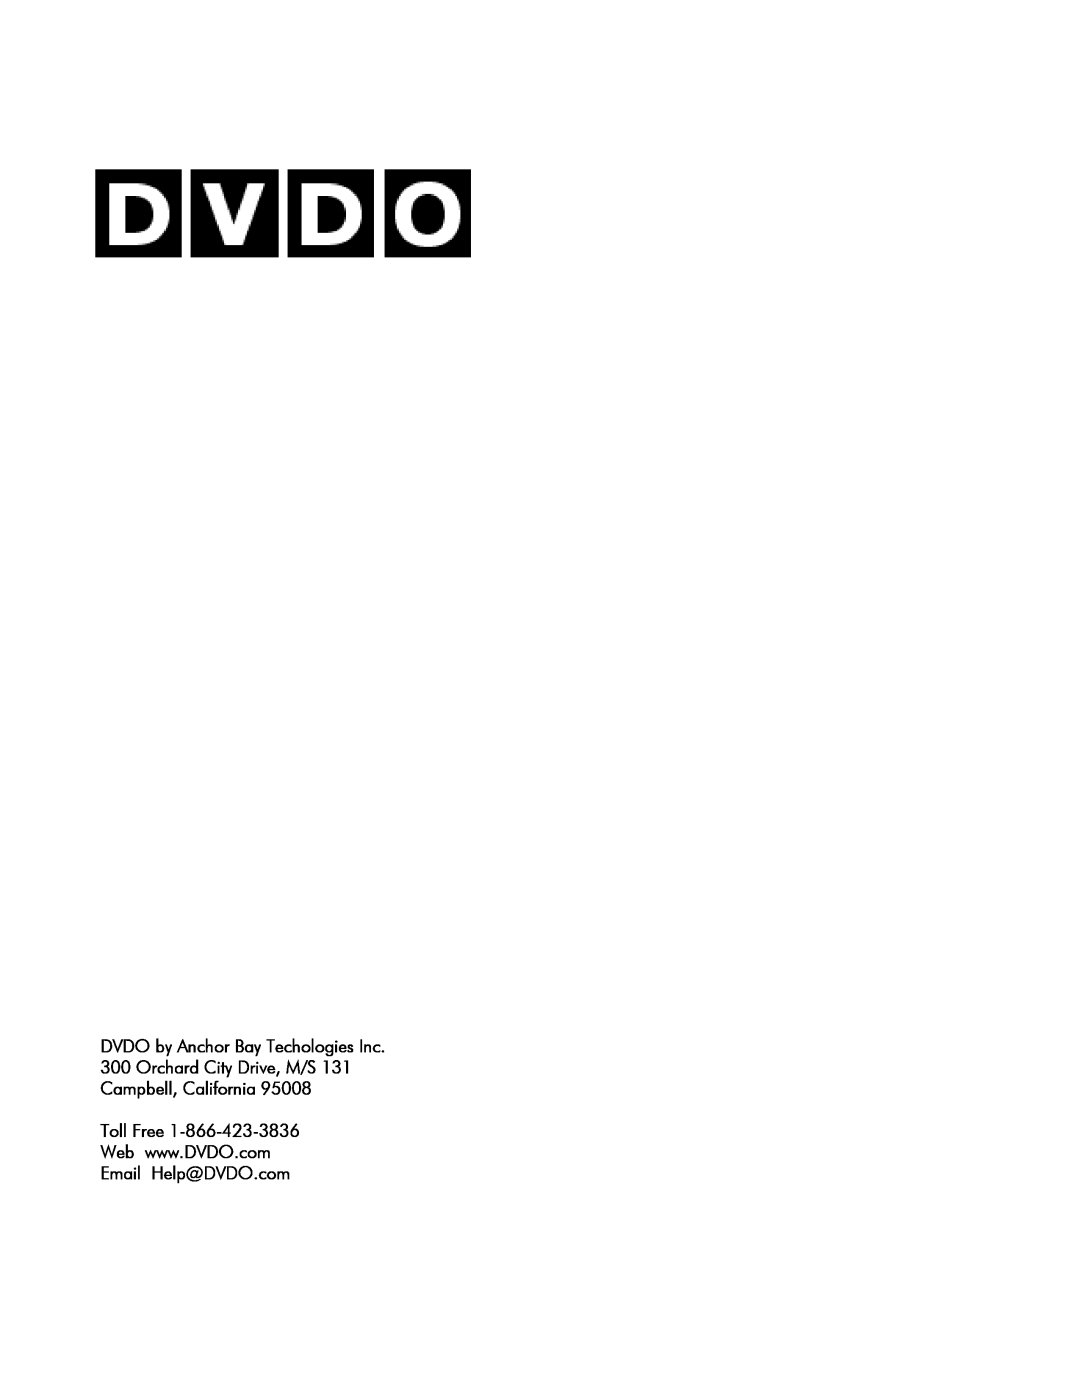 DVDO VS4 manual Toll Free, Email Help@DVDO.com 